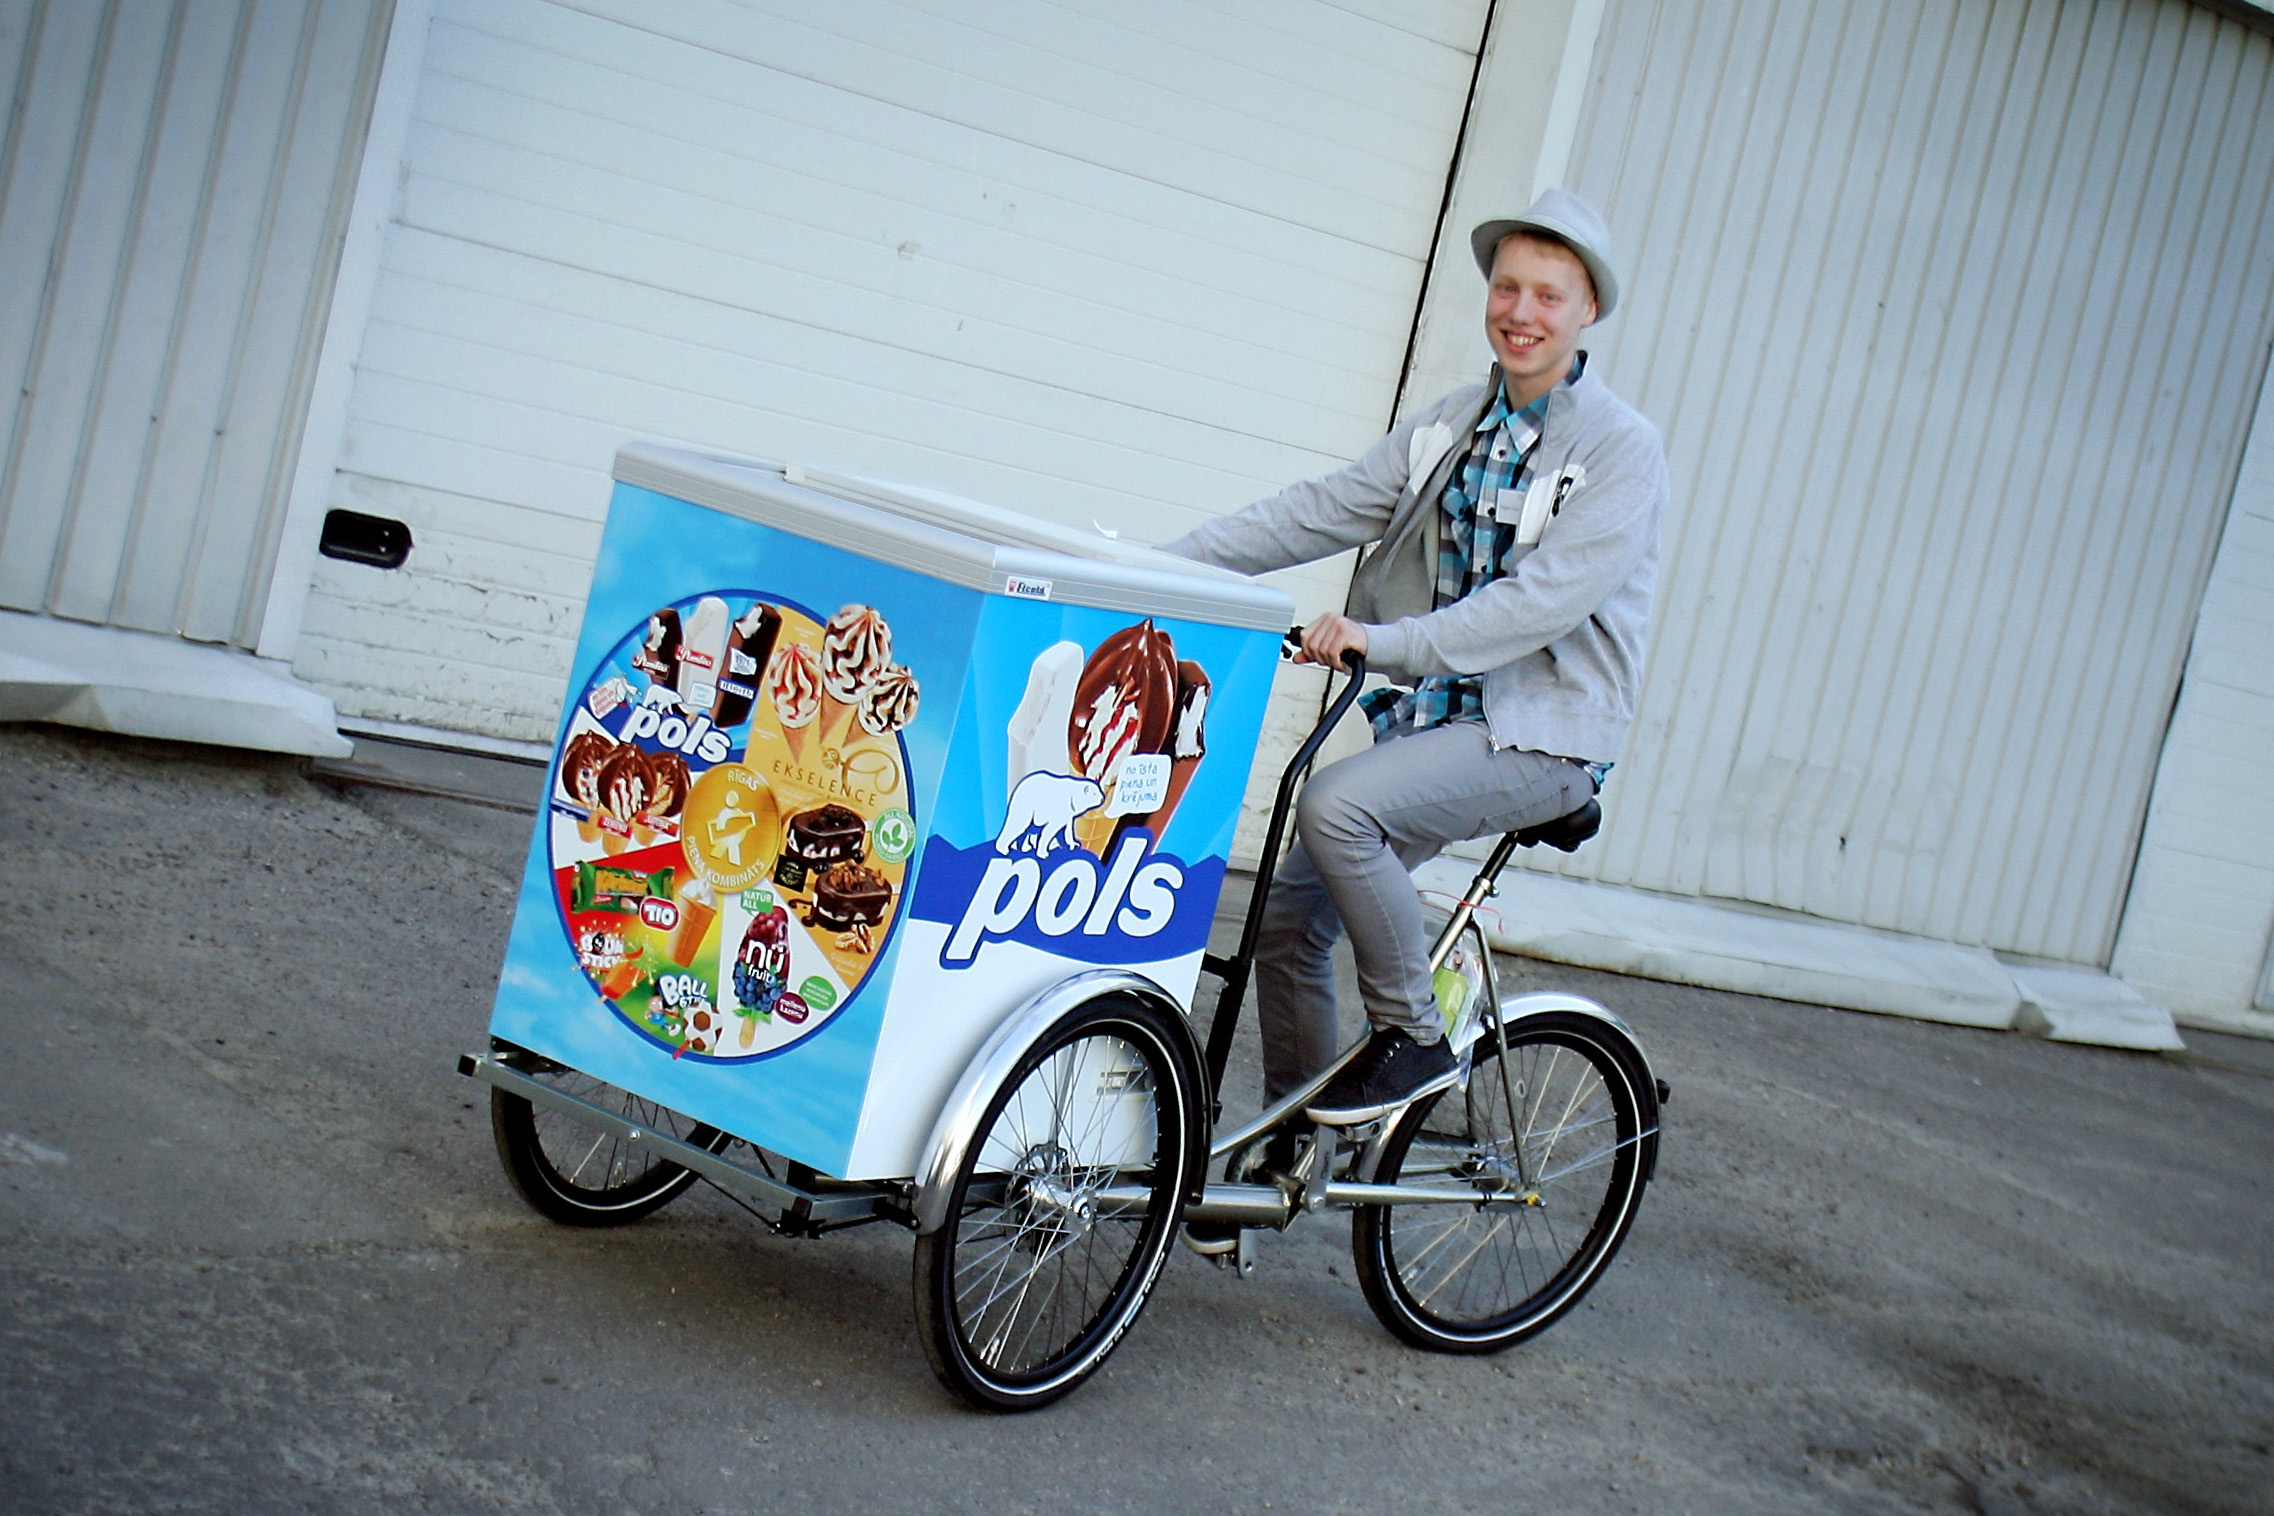 Мороженщика 5 бобо. Велосипед бизнес. Велосипед мороженое. Мороженщик на велосипеде. Велосипед с тележкой мороженого.